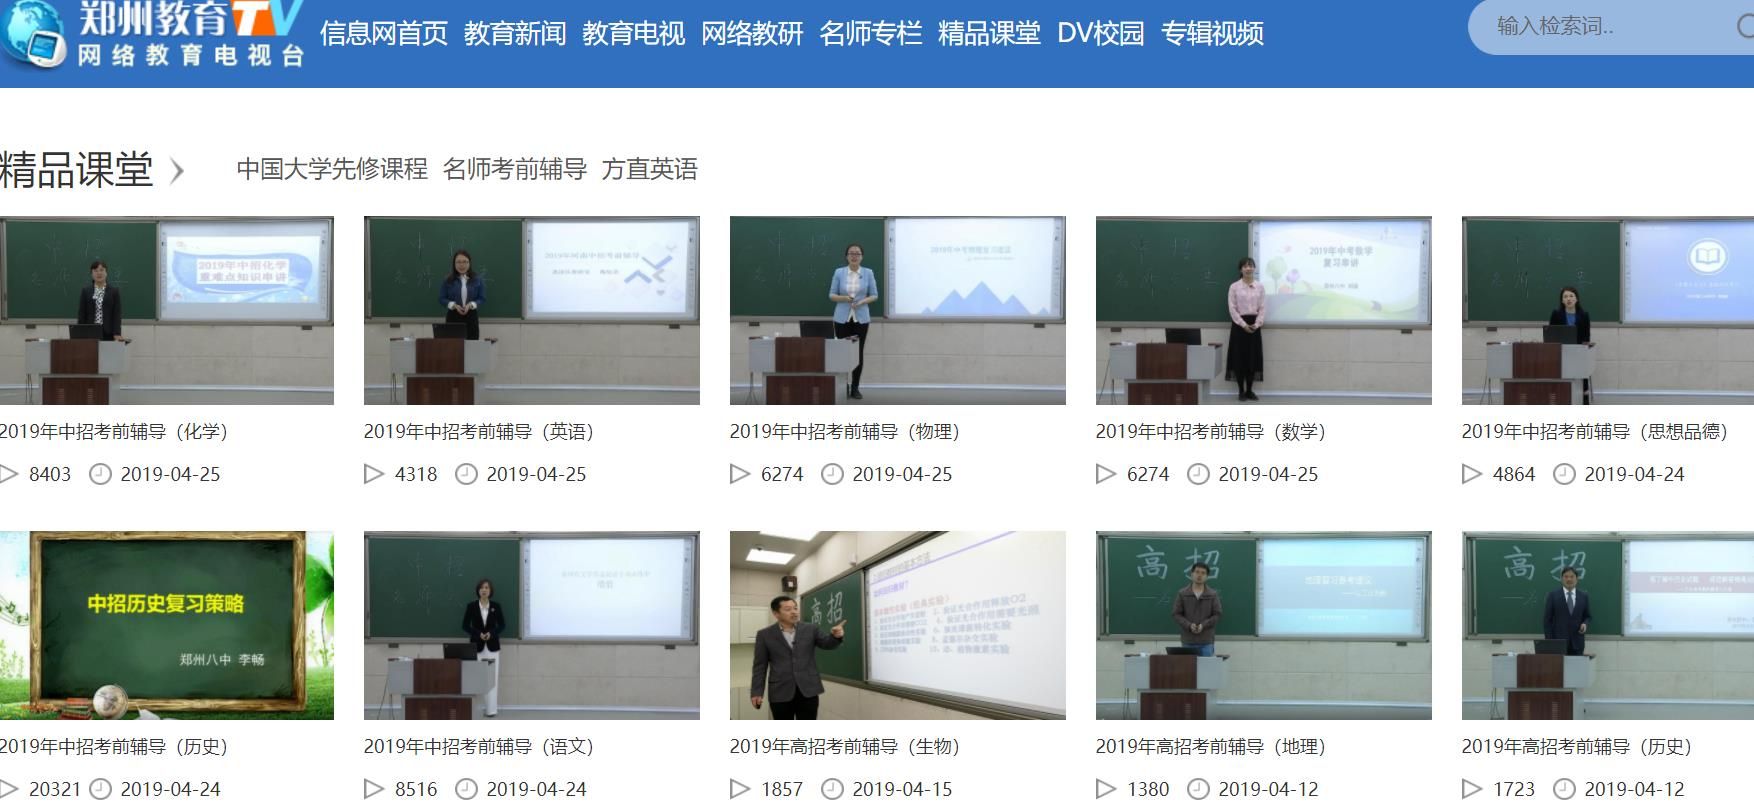 郑州教育电视台官网 截图